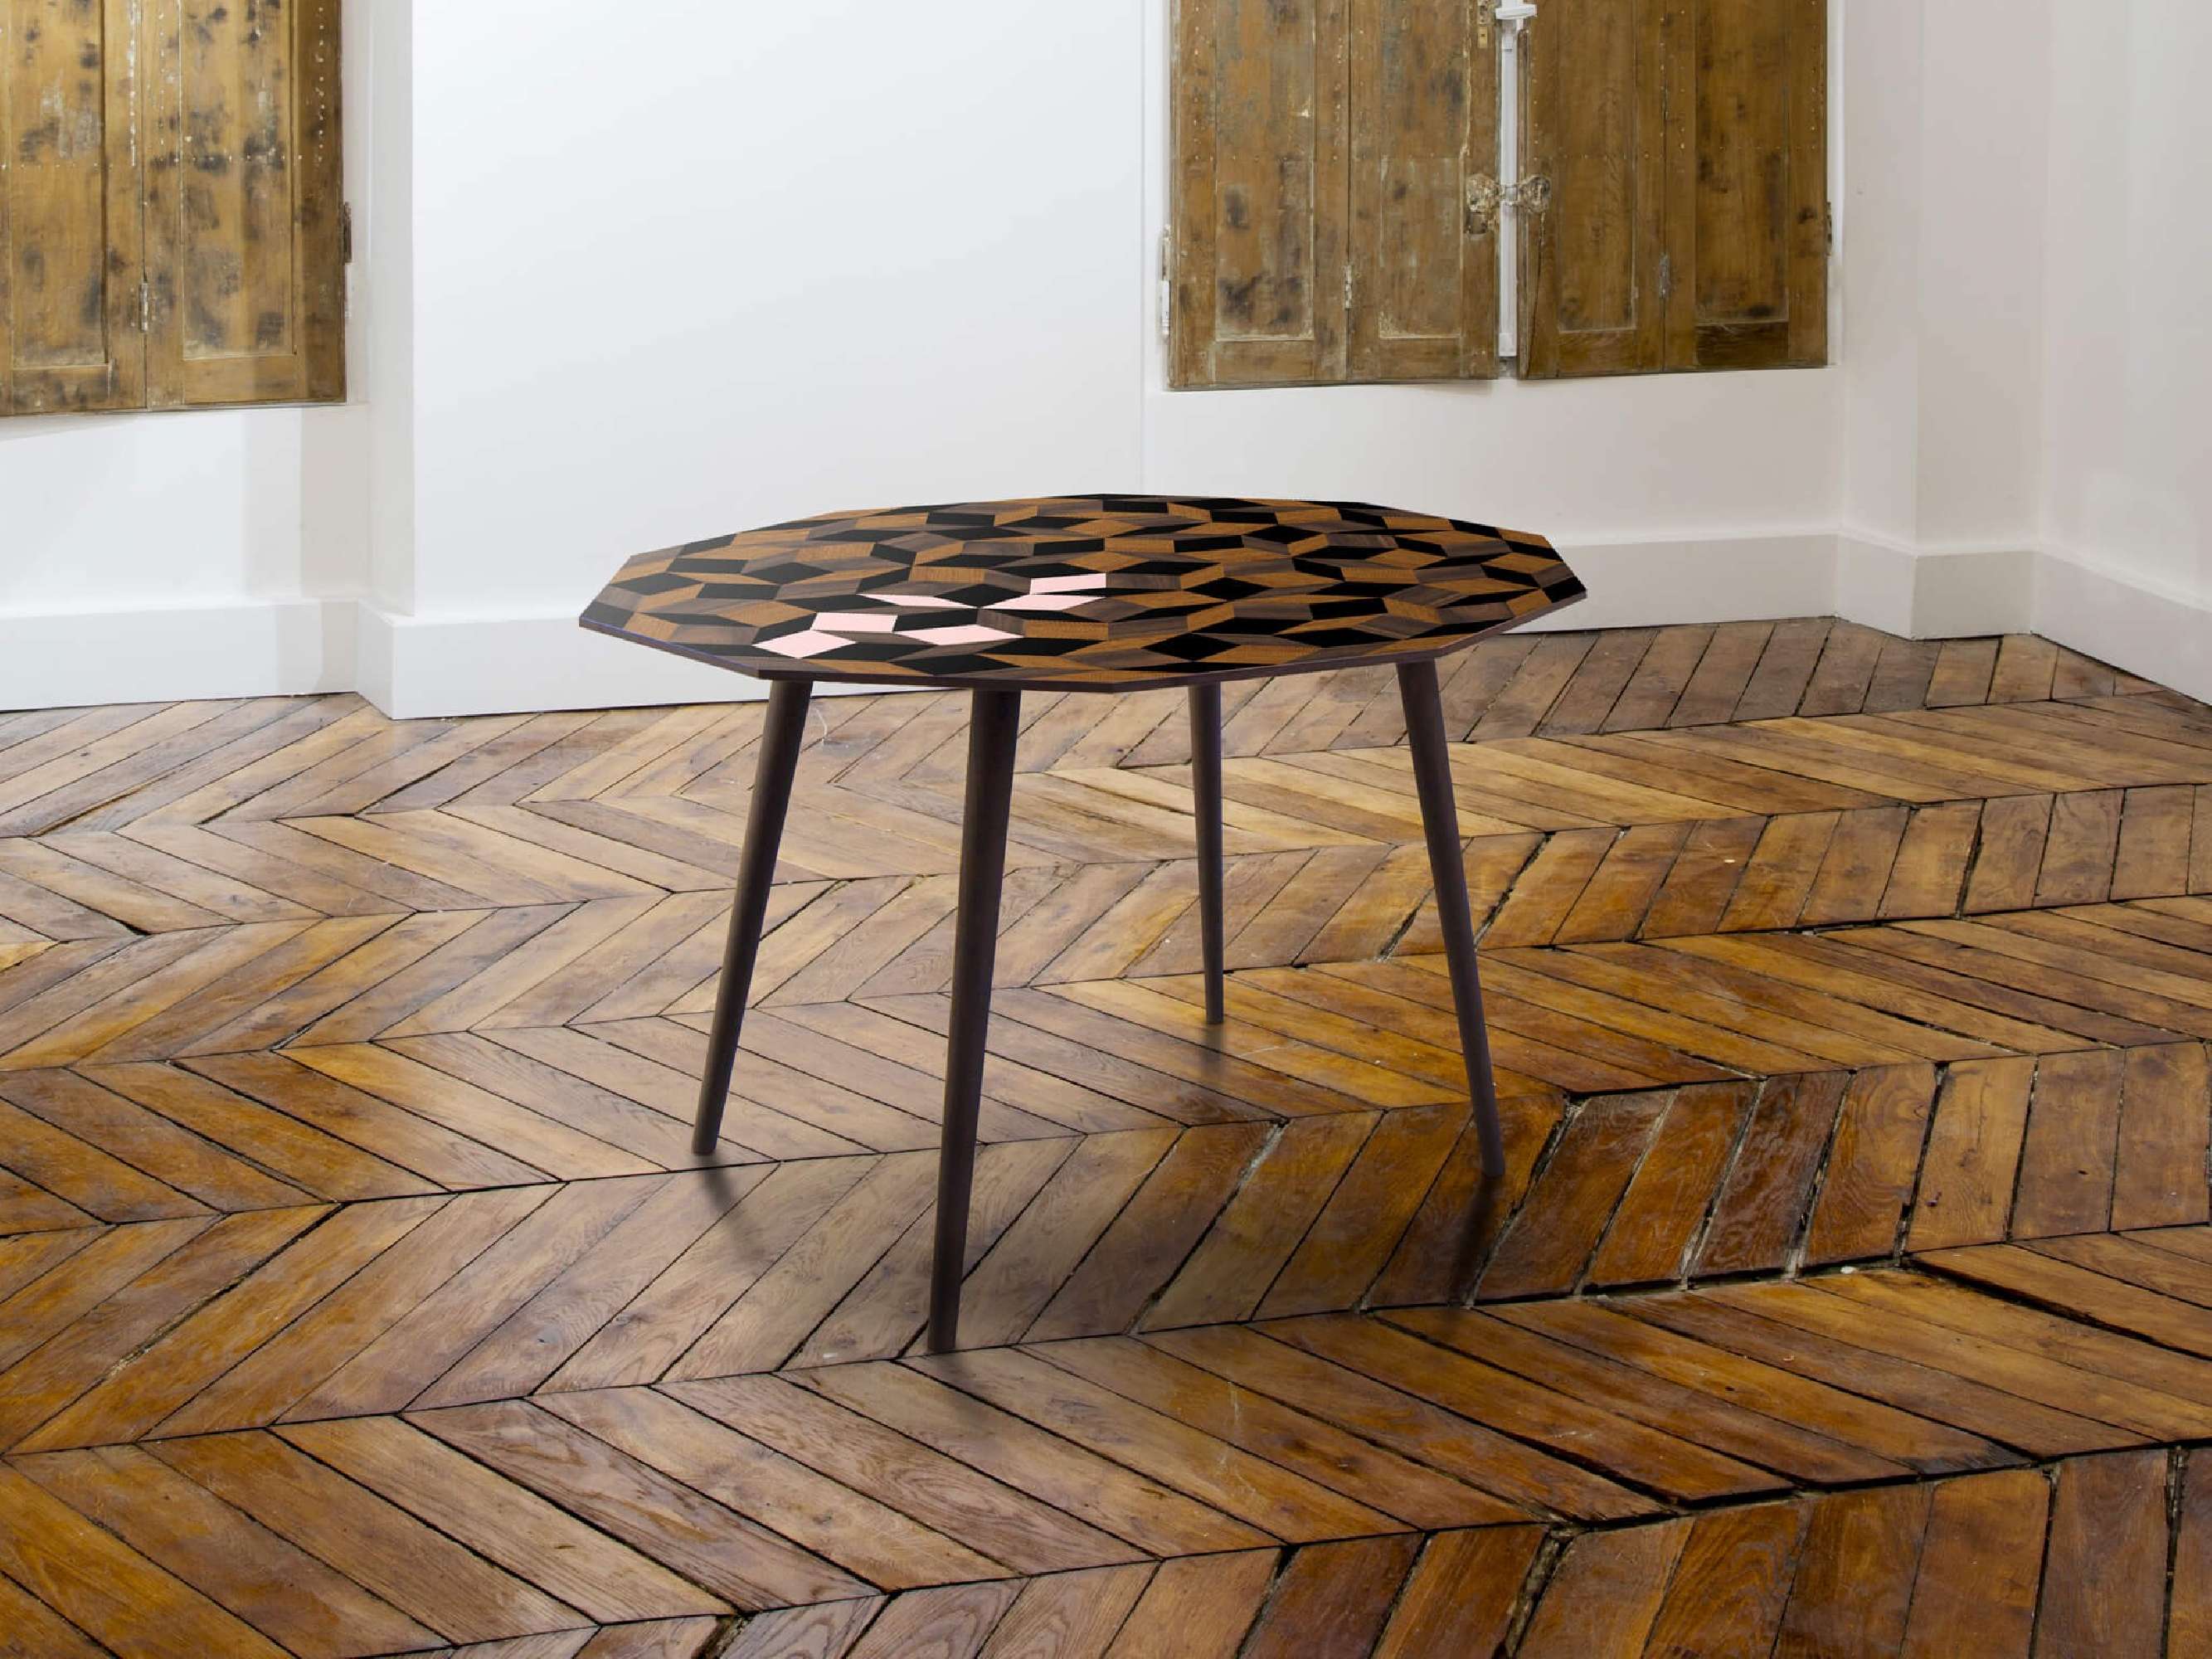 Table à manger ronde Penrose Spring Wood, bois et touche de rose poudré Design IchetKar édition Bazartherapy